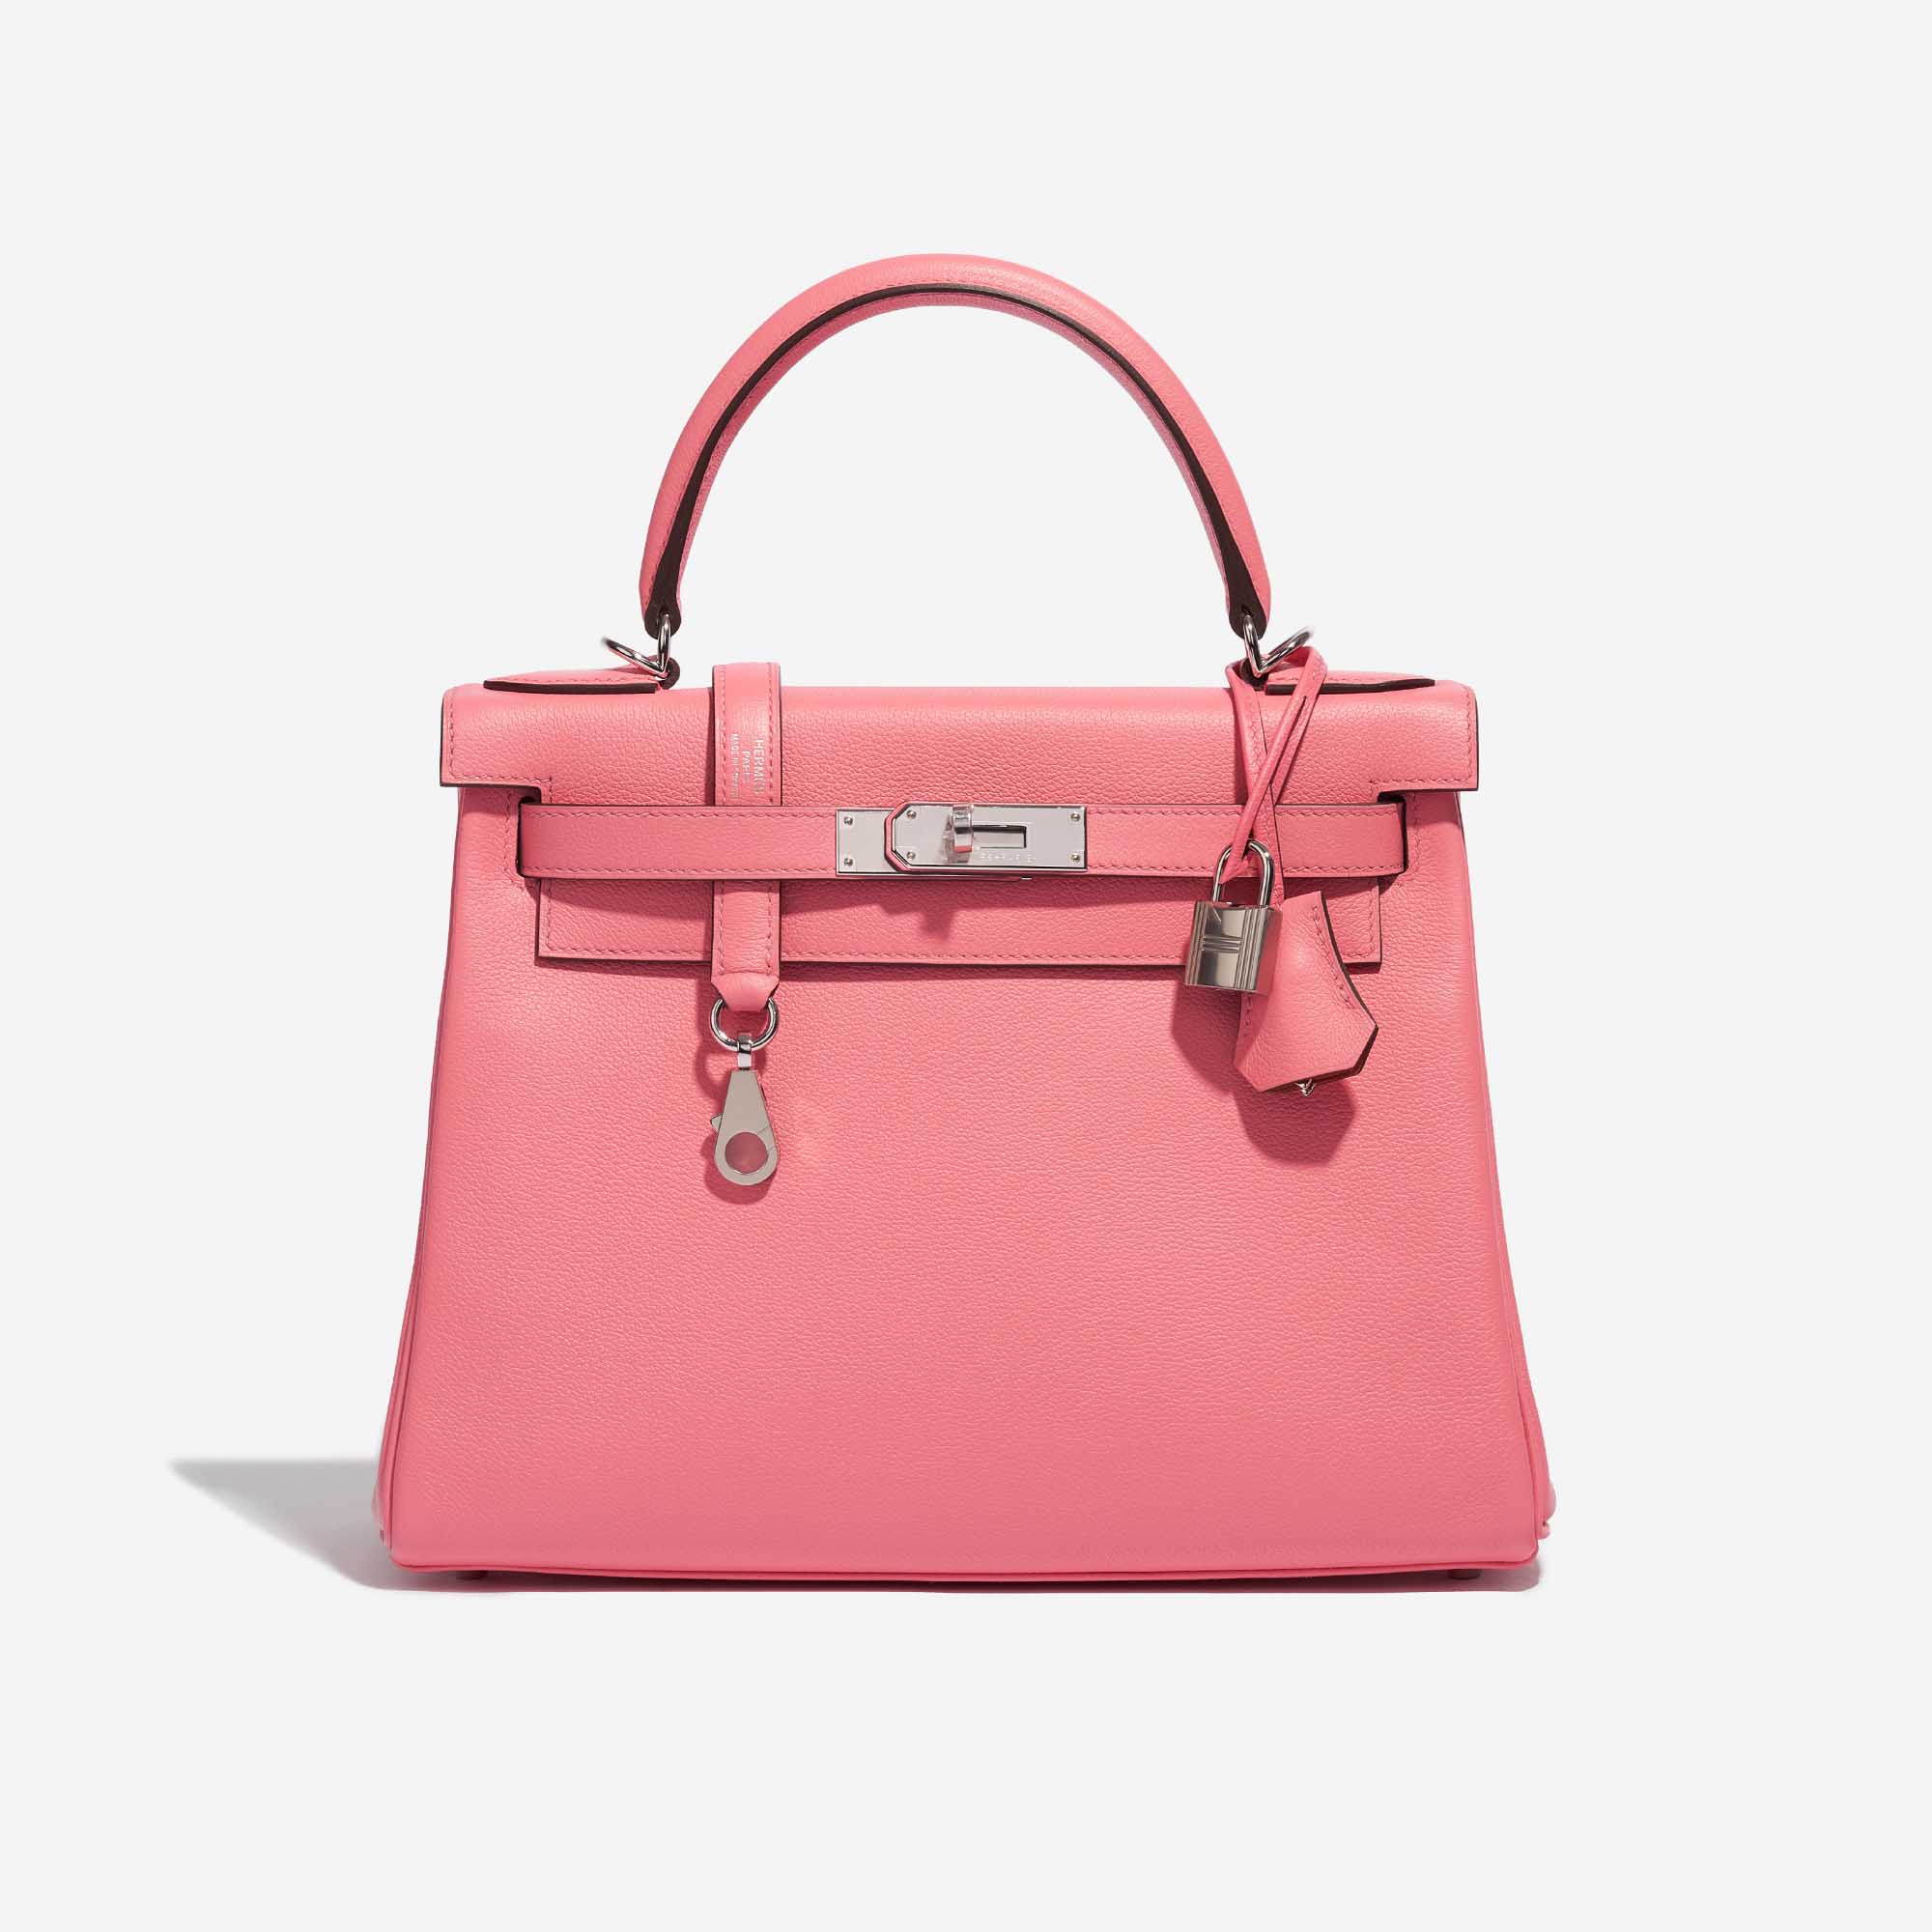 Sac Hermès Kelly 28 Verso Evercolor Rose D'Été / Terre Battue Pink, Rose Front | Vendez votre sac de créateur sur Saclab.com